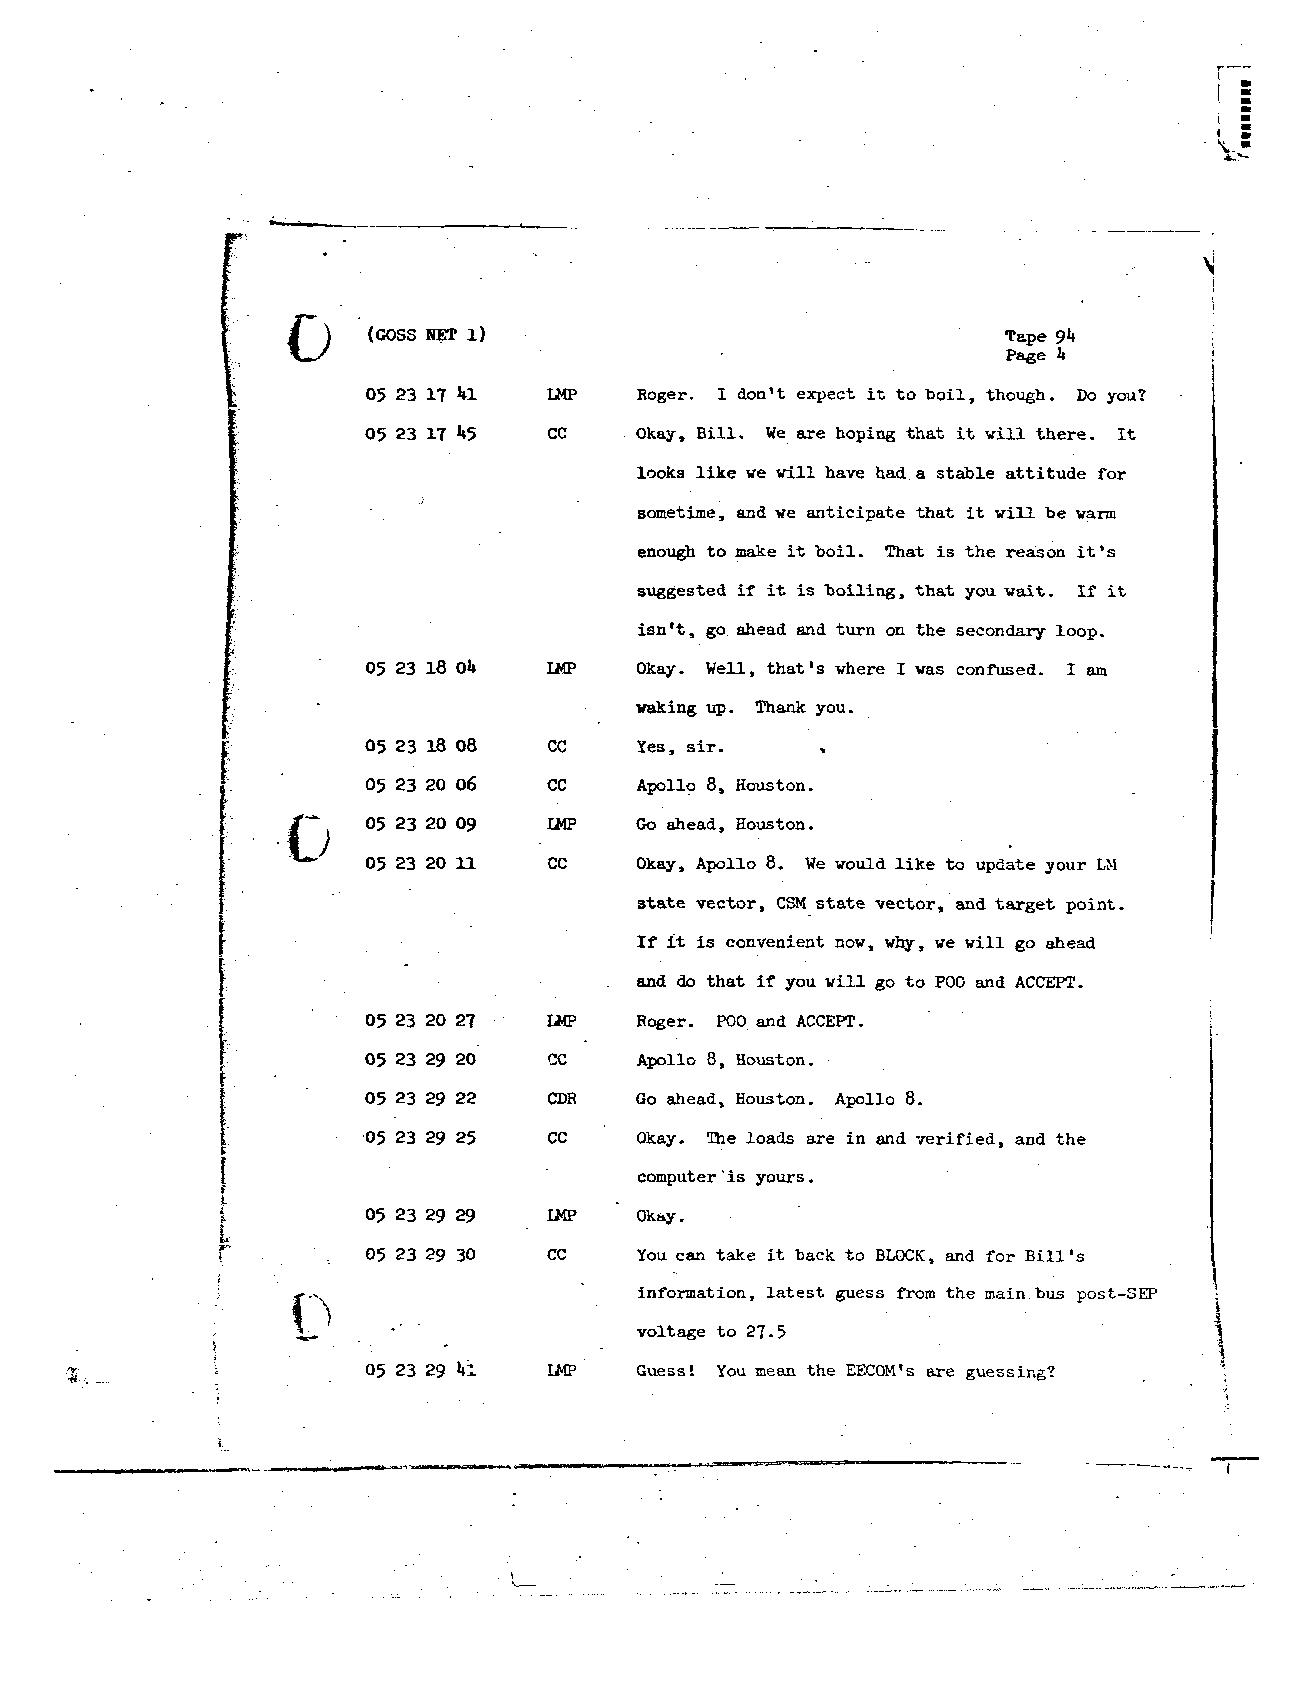 Page 742 of Apollo 8’s original transcript